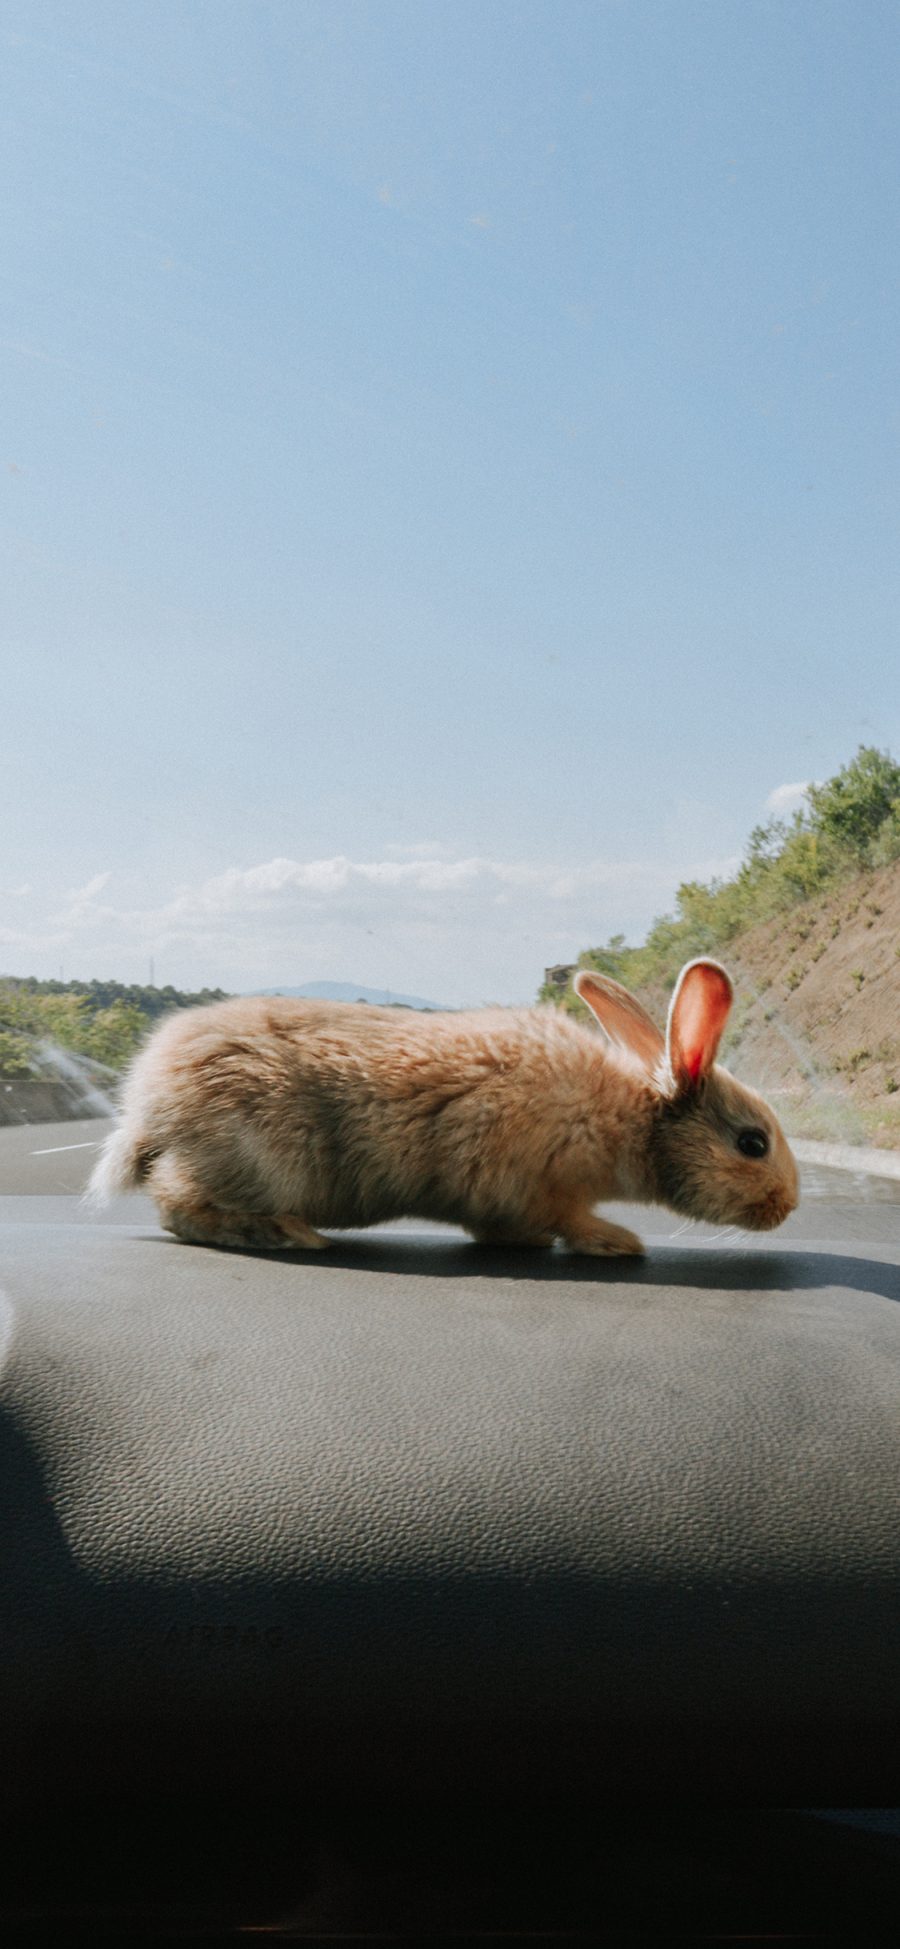 [2436×1125]宠物 车内 车厢 兔子 牲畜 苹果手机壁纸图片